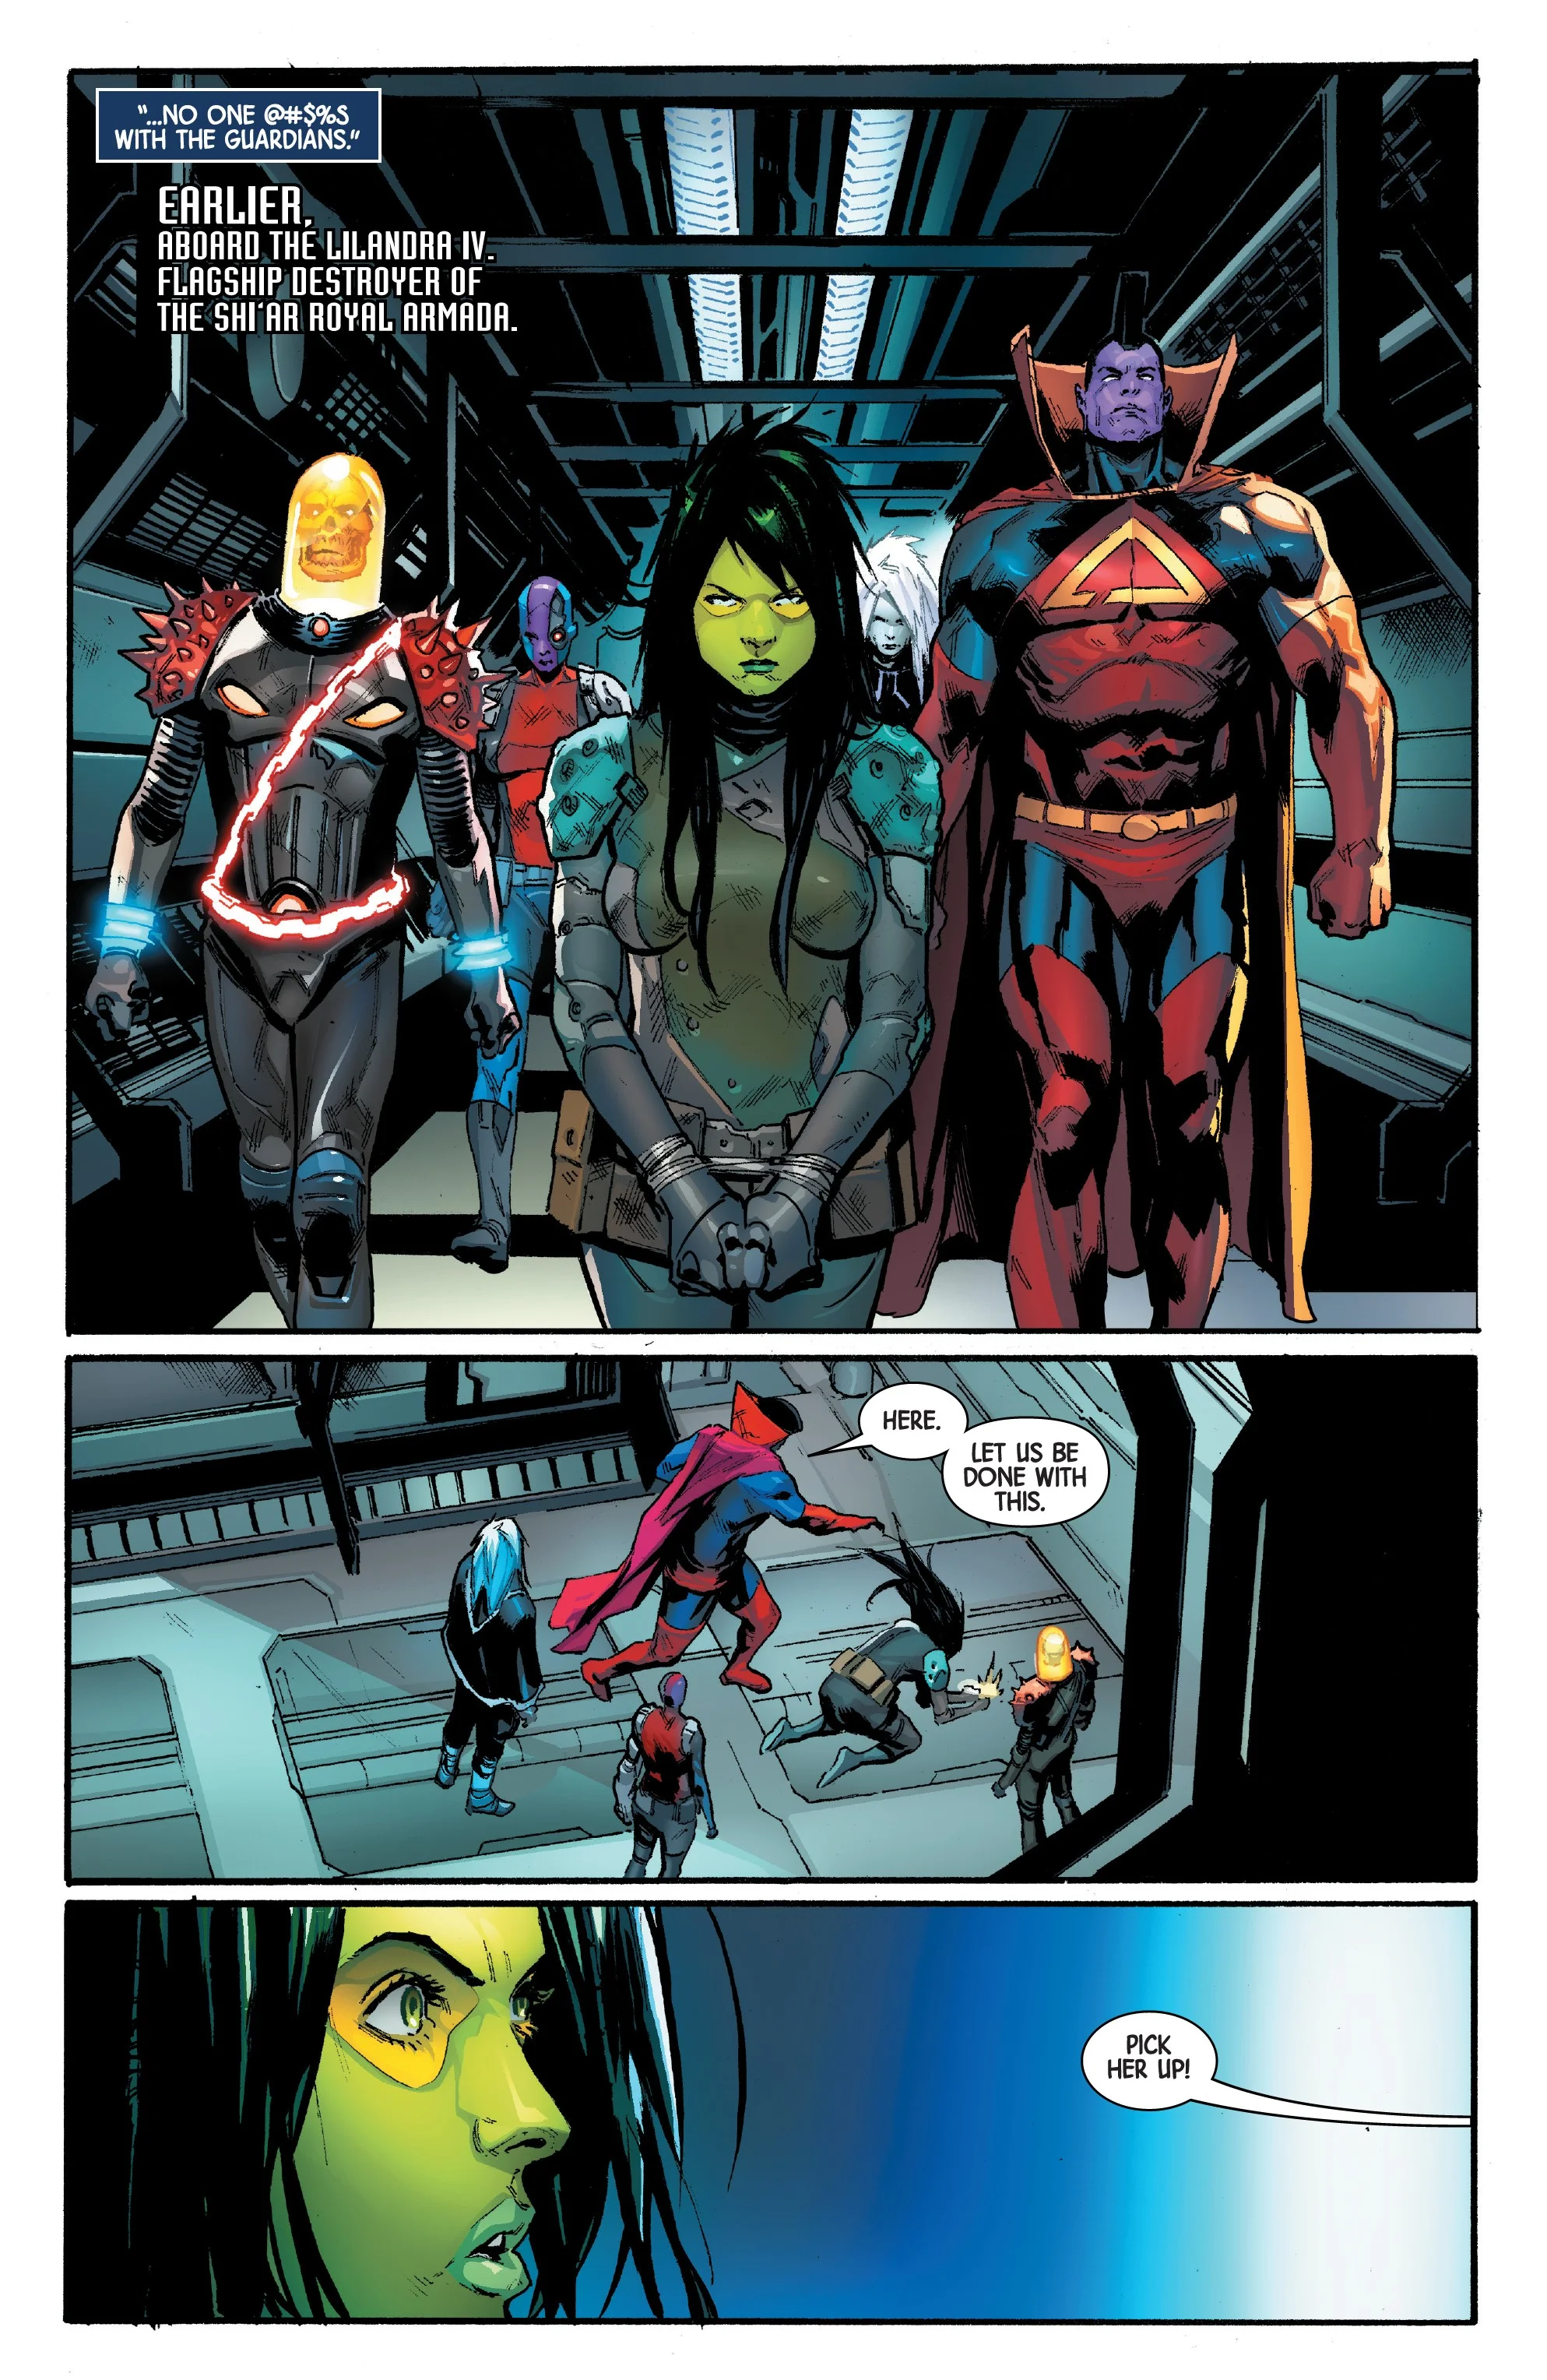 Как Хела сумела возродить своего возлюбленного Таноса на страницах комиксов Marvel? - фото 4